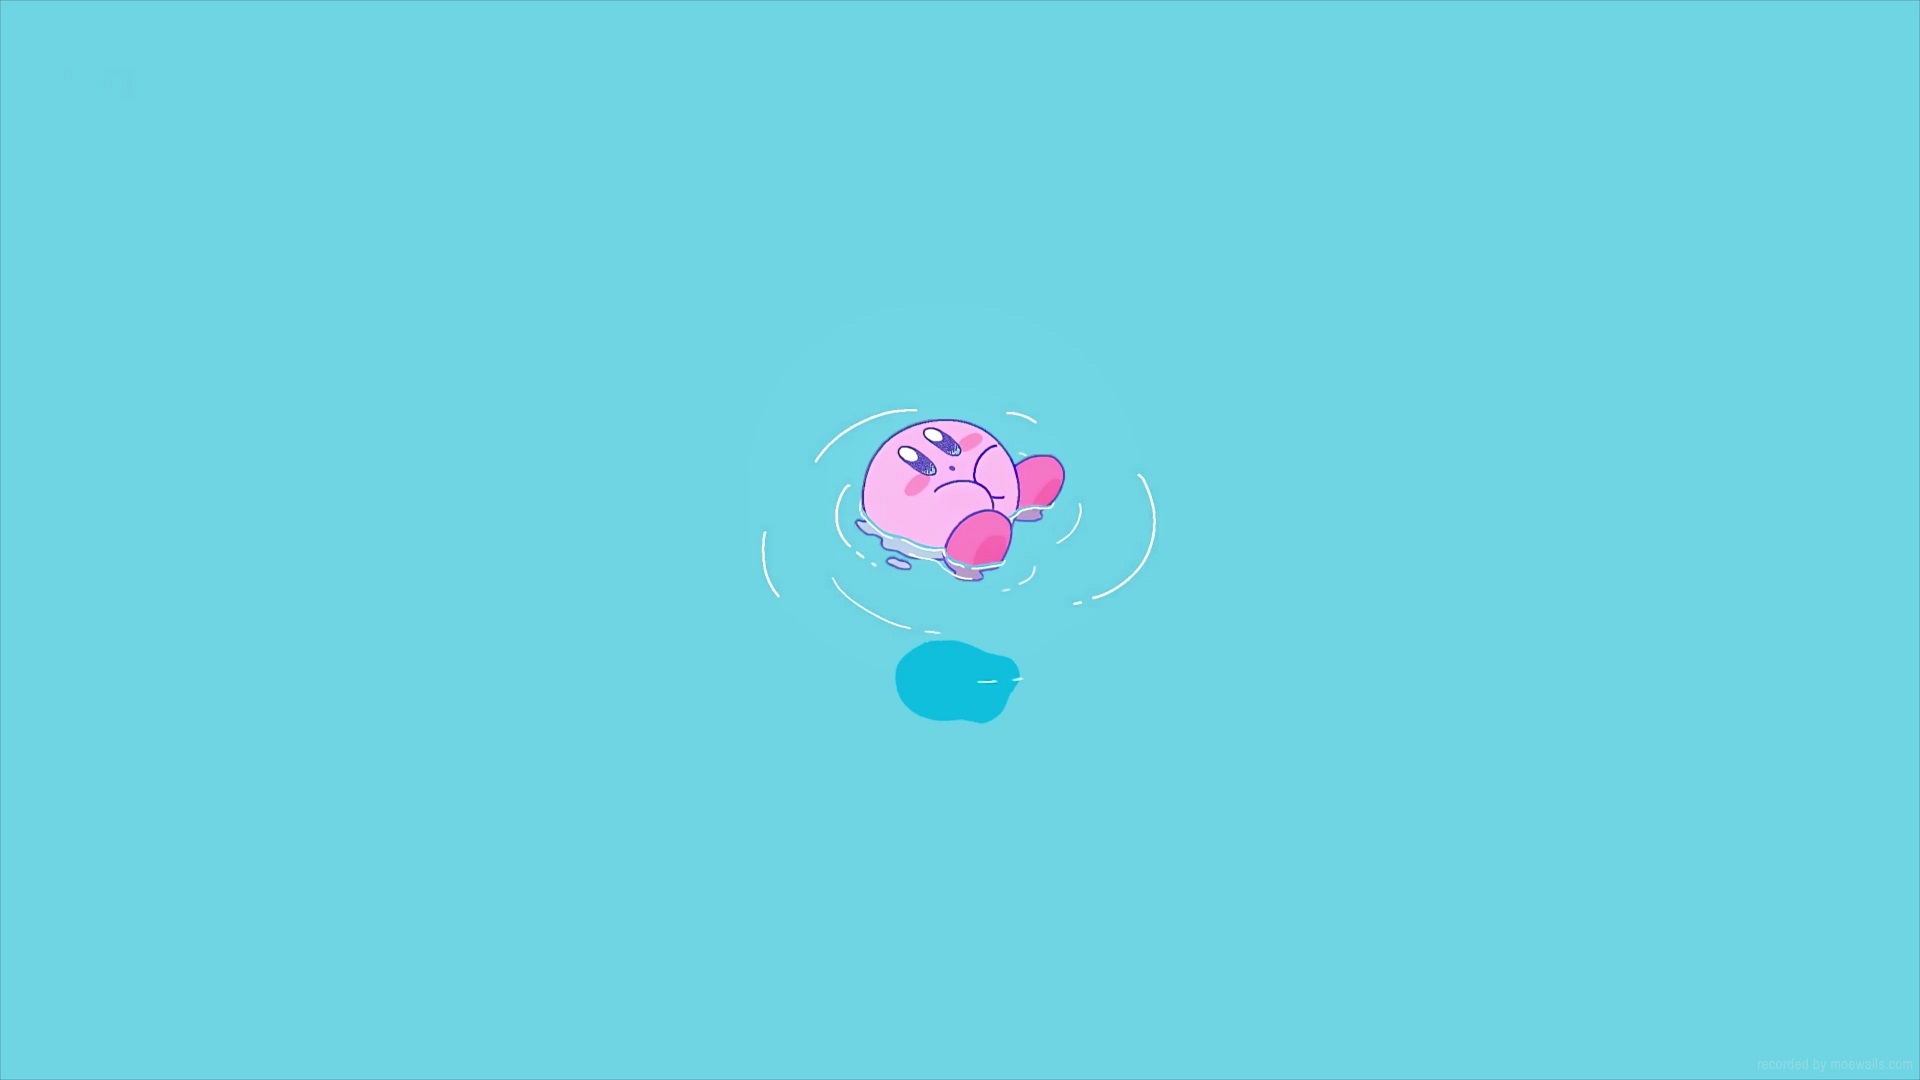 Cùng thưởng thức hình nền động Kirby Live Wallpaper trên điện thoại của bạn! Với hiệu ứng động rực rỡ và ngộ nghĩnh của nhân vật Kirby, bạn sẽ có được một trải nghiệm tuyệt vời trên màn hình của mình.